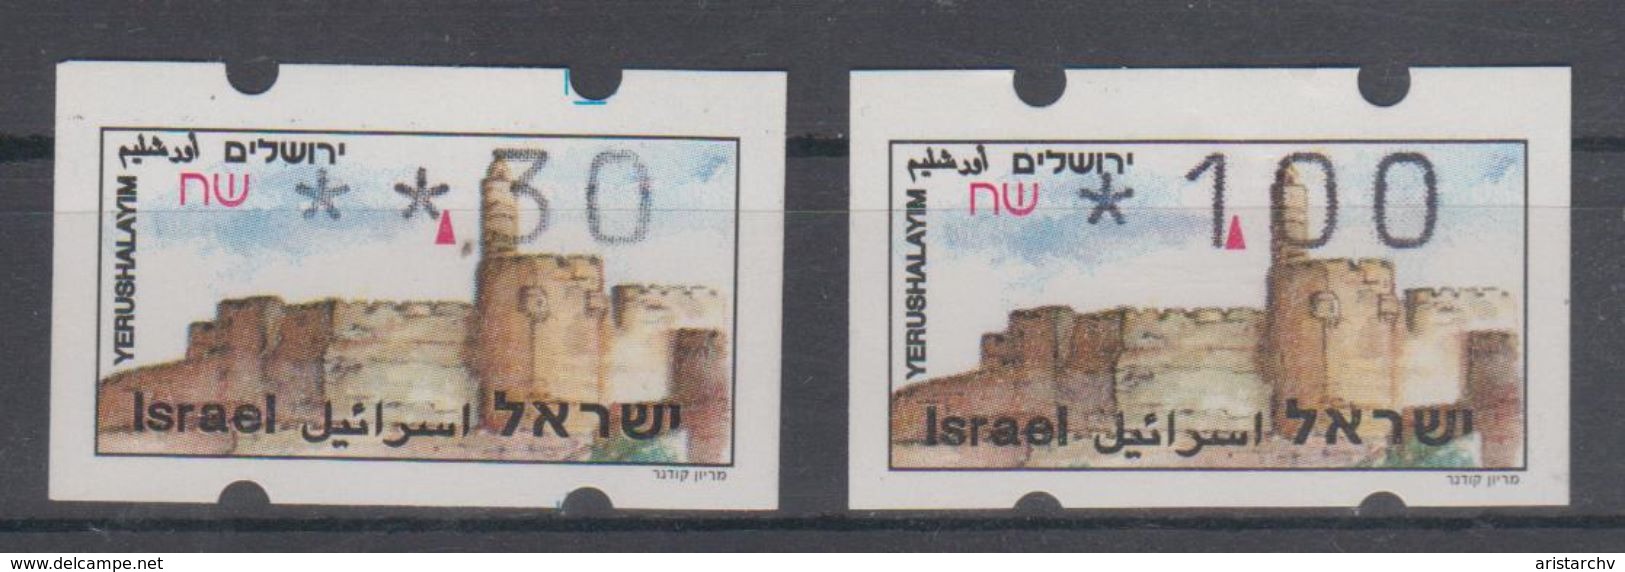 ISRAEL 1994 SIMA ATM JERUSALEM YERUSHALAYIM 0.30 1 SHEKELS - Frankeervignetten (Frama)